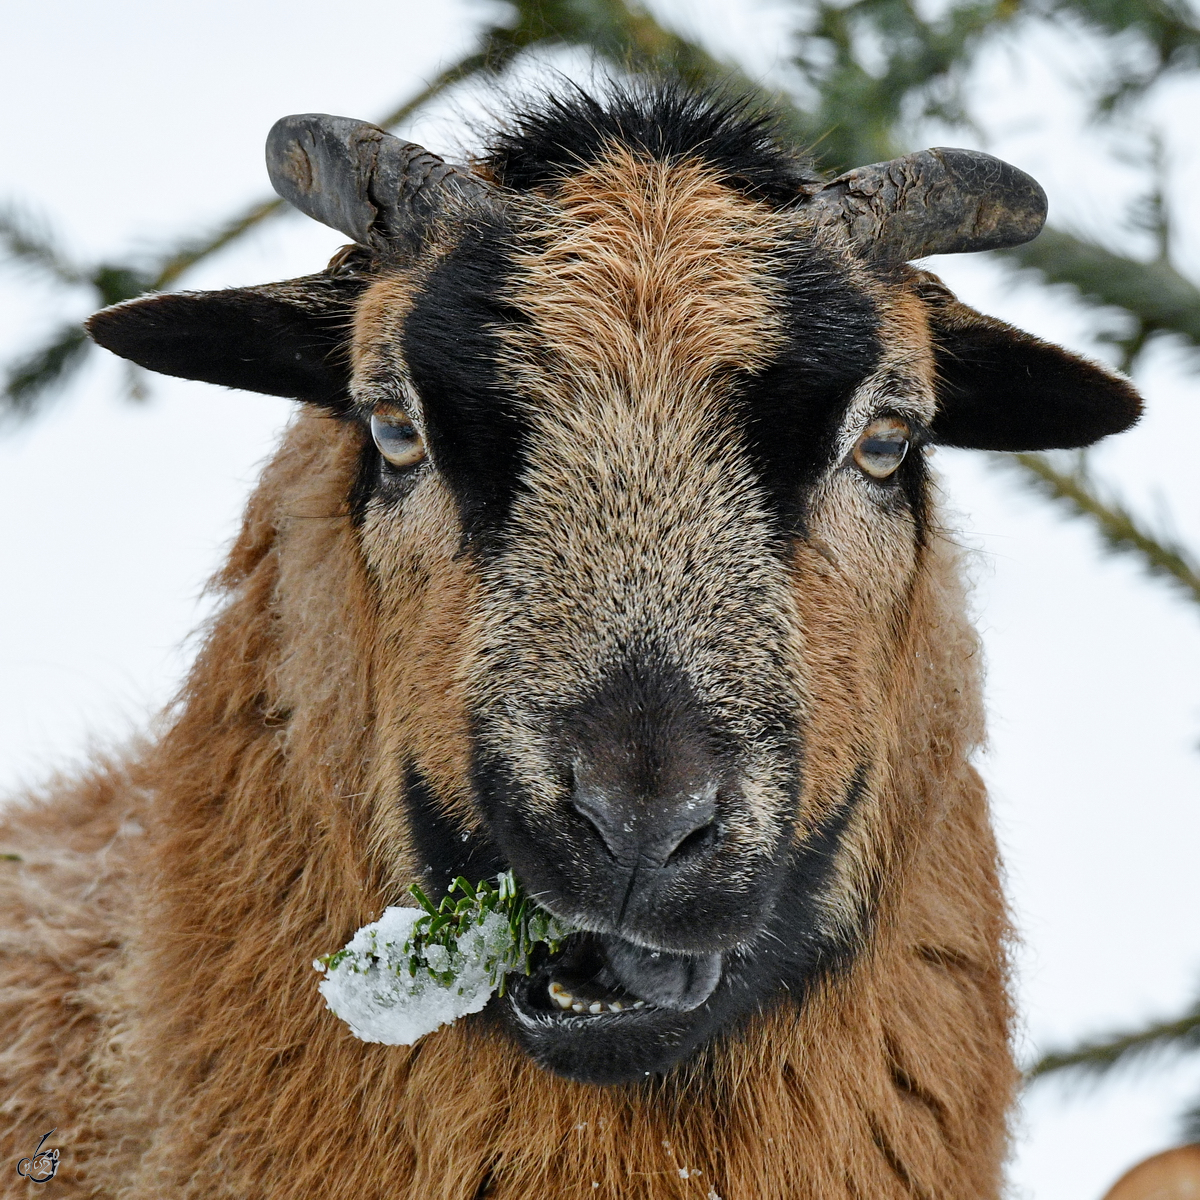 Lecker Tannengestrpp fr dieses Schaf. (Hattingen, Februar 2021)